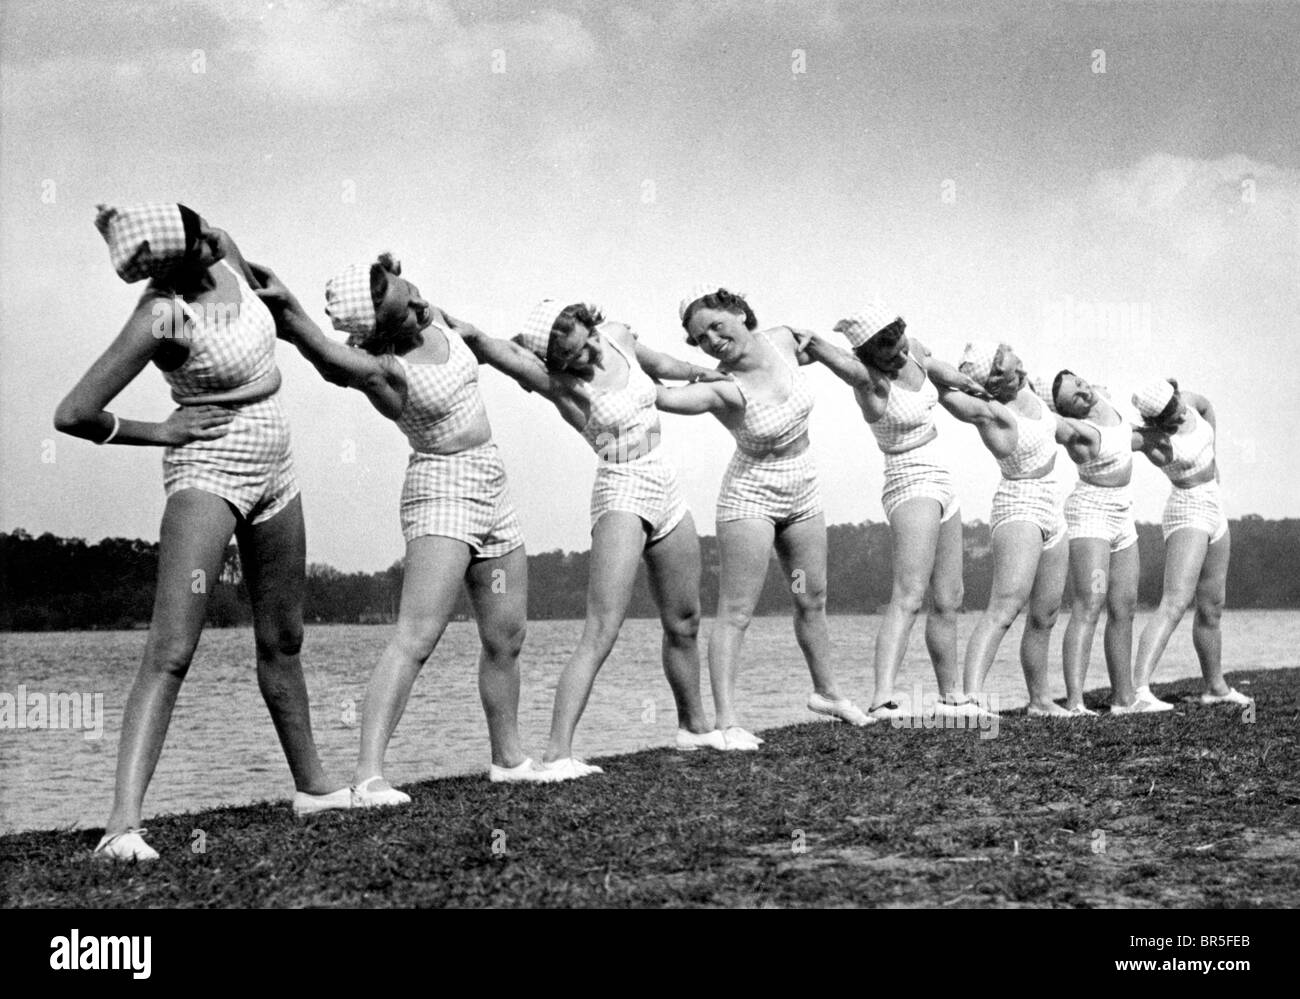 Fotografía Histórica, las mujeres haciendo gimnasia, alrededor de 1929 Foto de stock